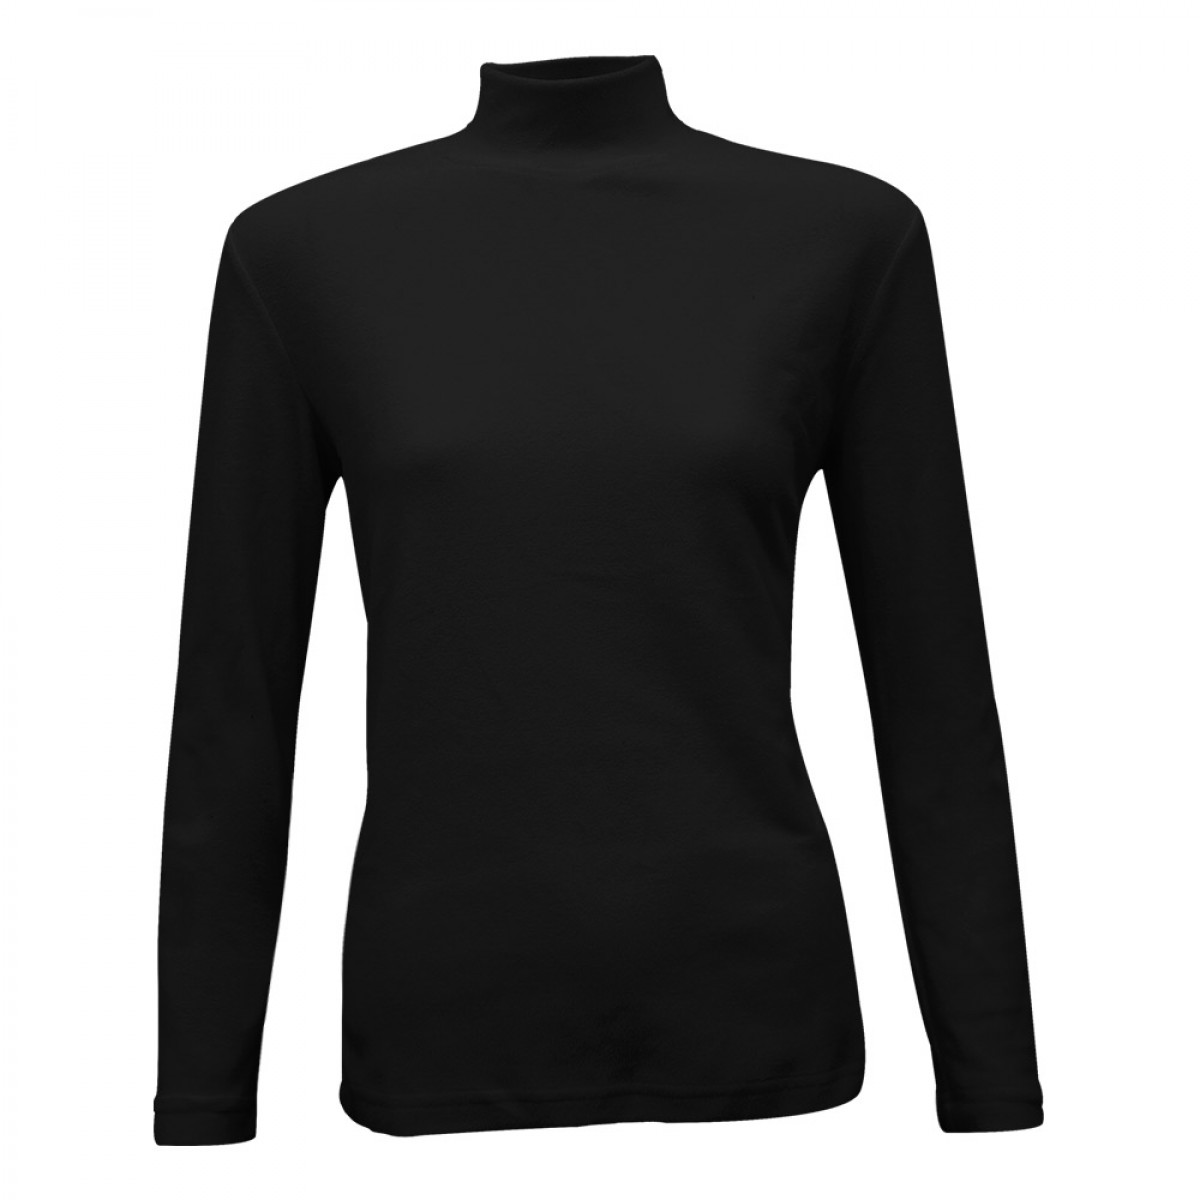 women-fleece-t-neck-vest-kfv96818-8a